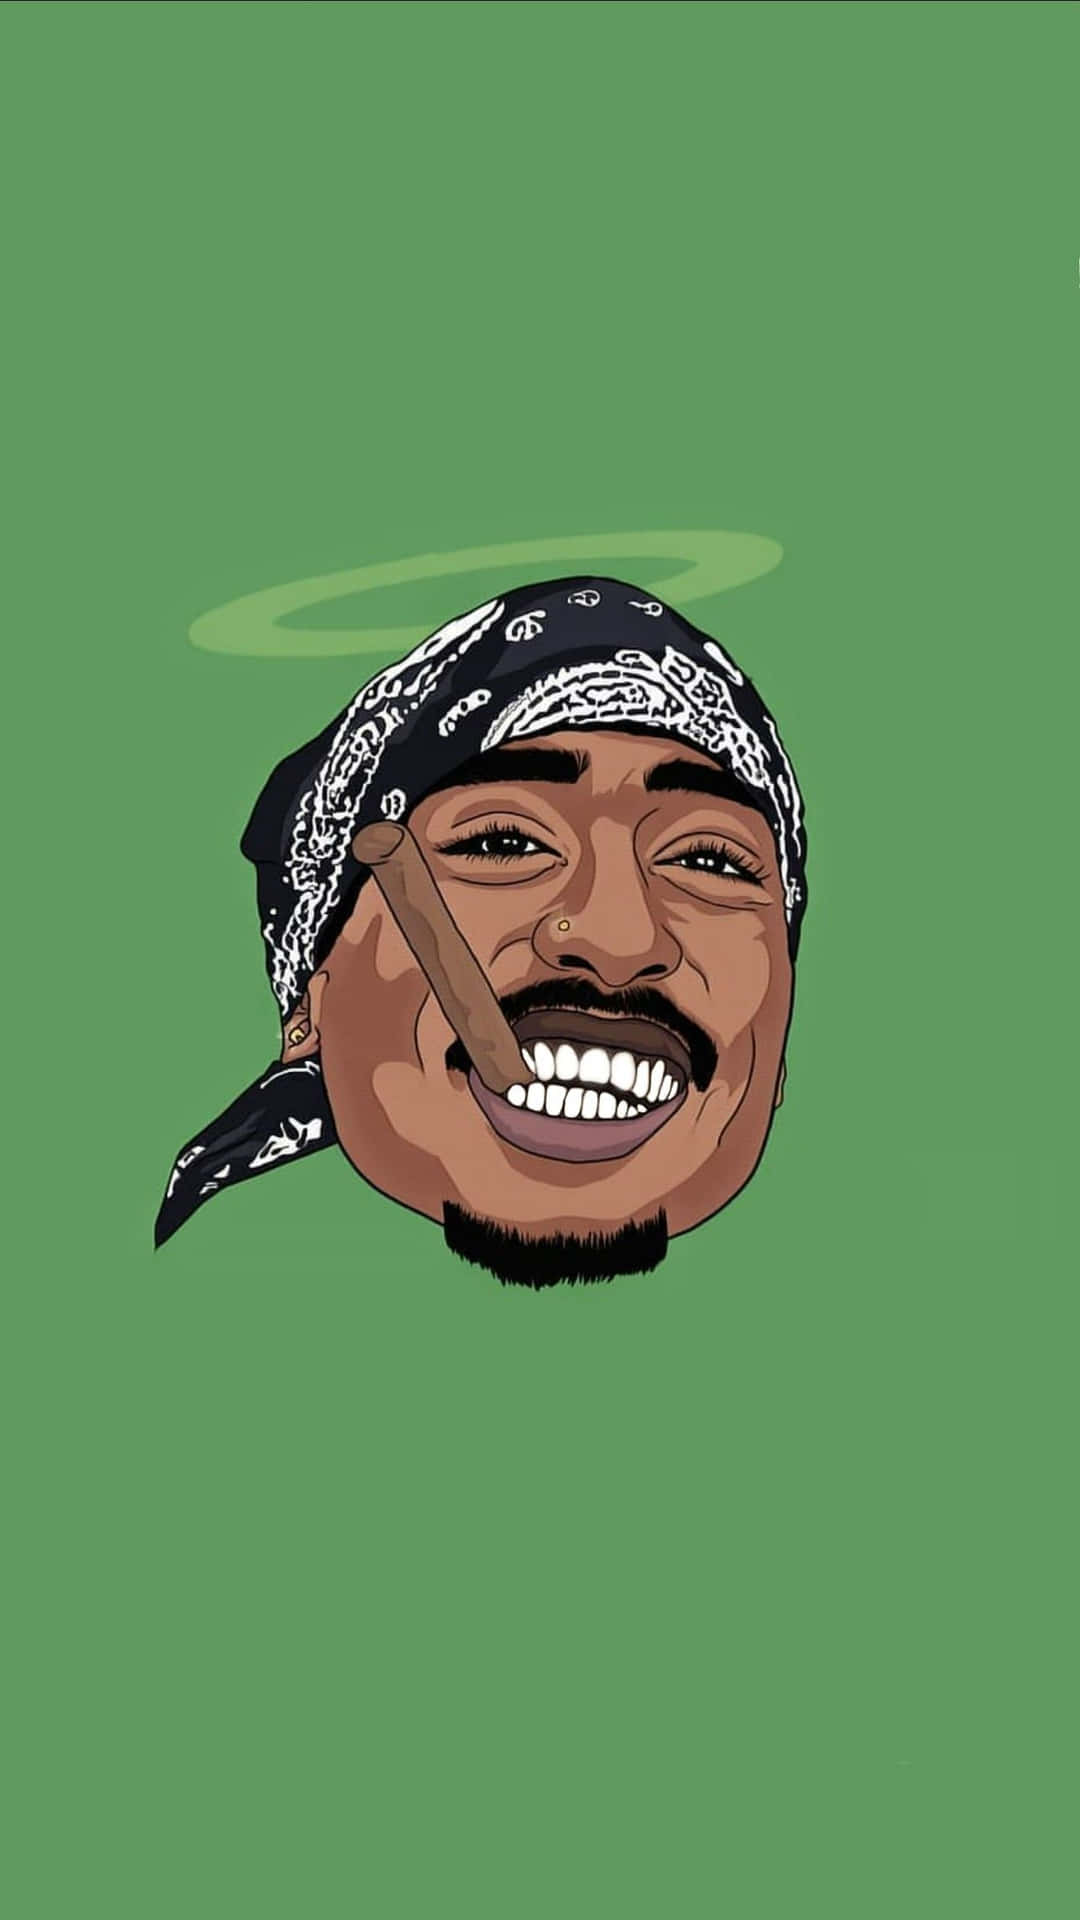 Umailustração De Desenho Animado Do Icônico Rapper Tupac Shakur. Papel de Parede